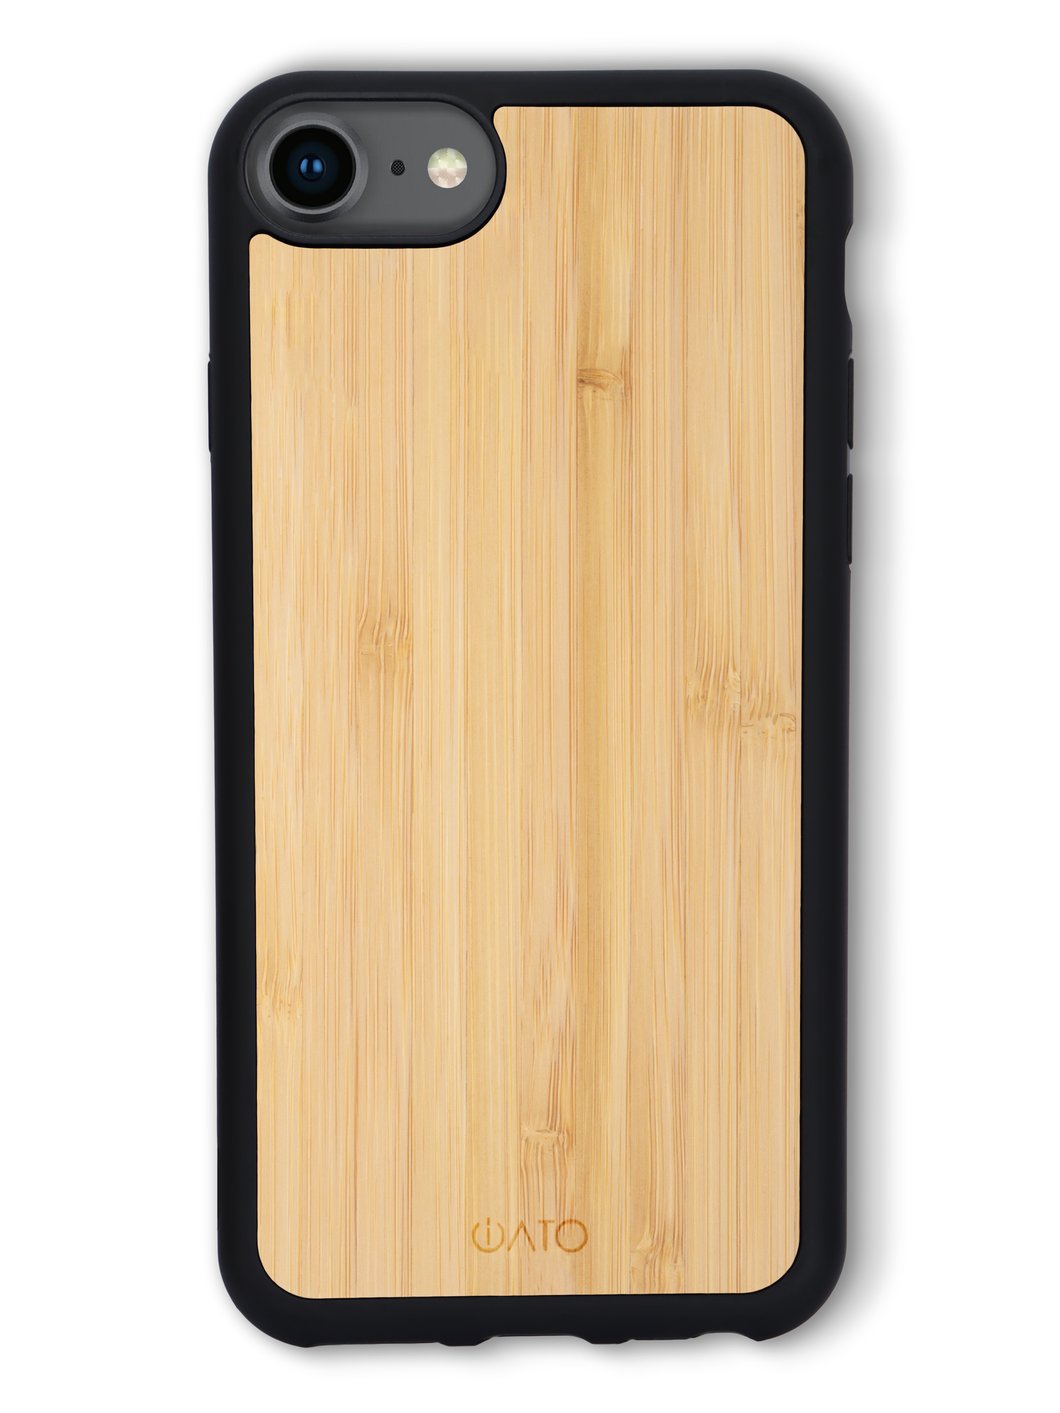 iPhone 7/8/ SE 2020 & 2022 - iATO Bamboo Wood Case - Protective Design. - iATO Awesome